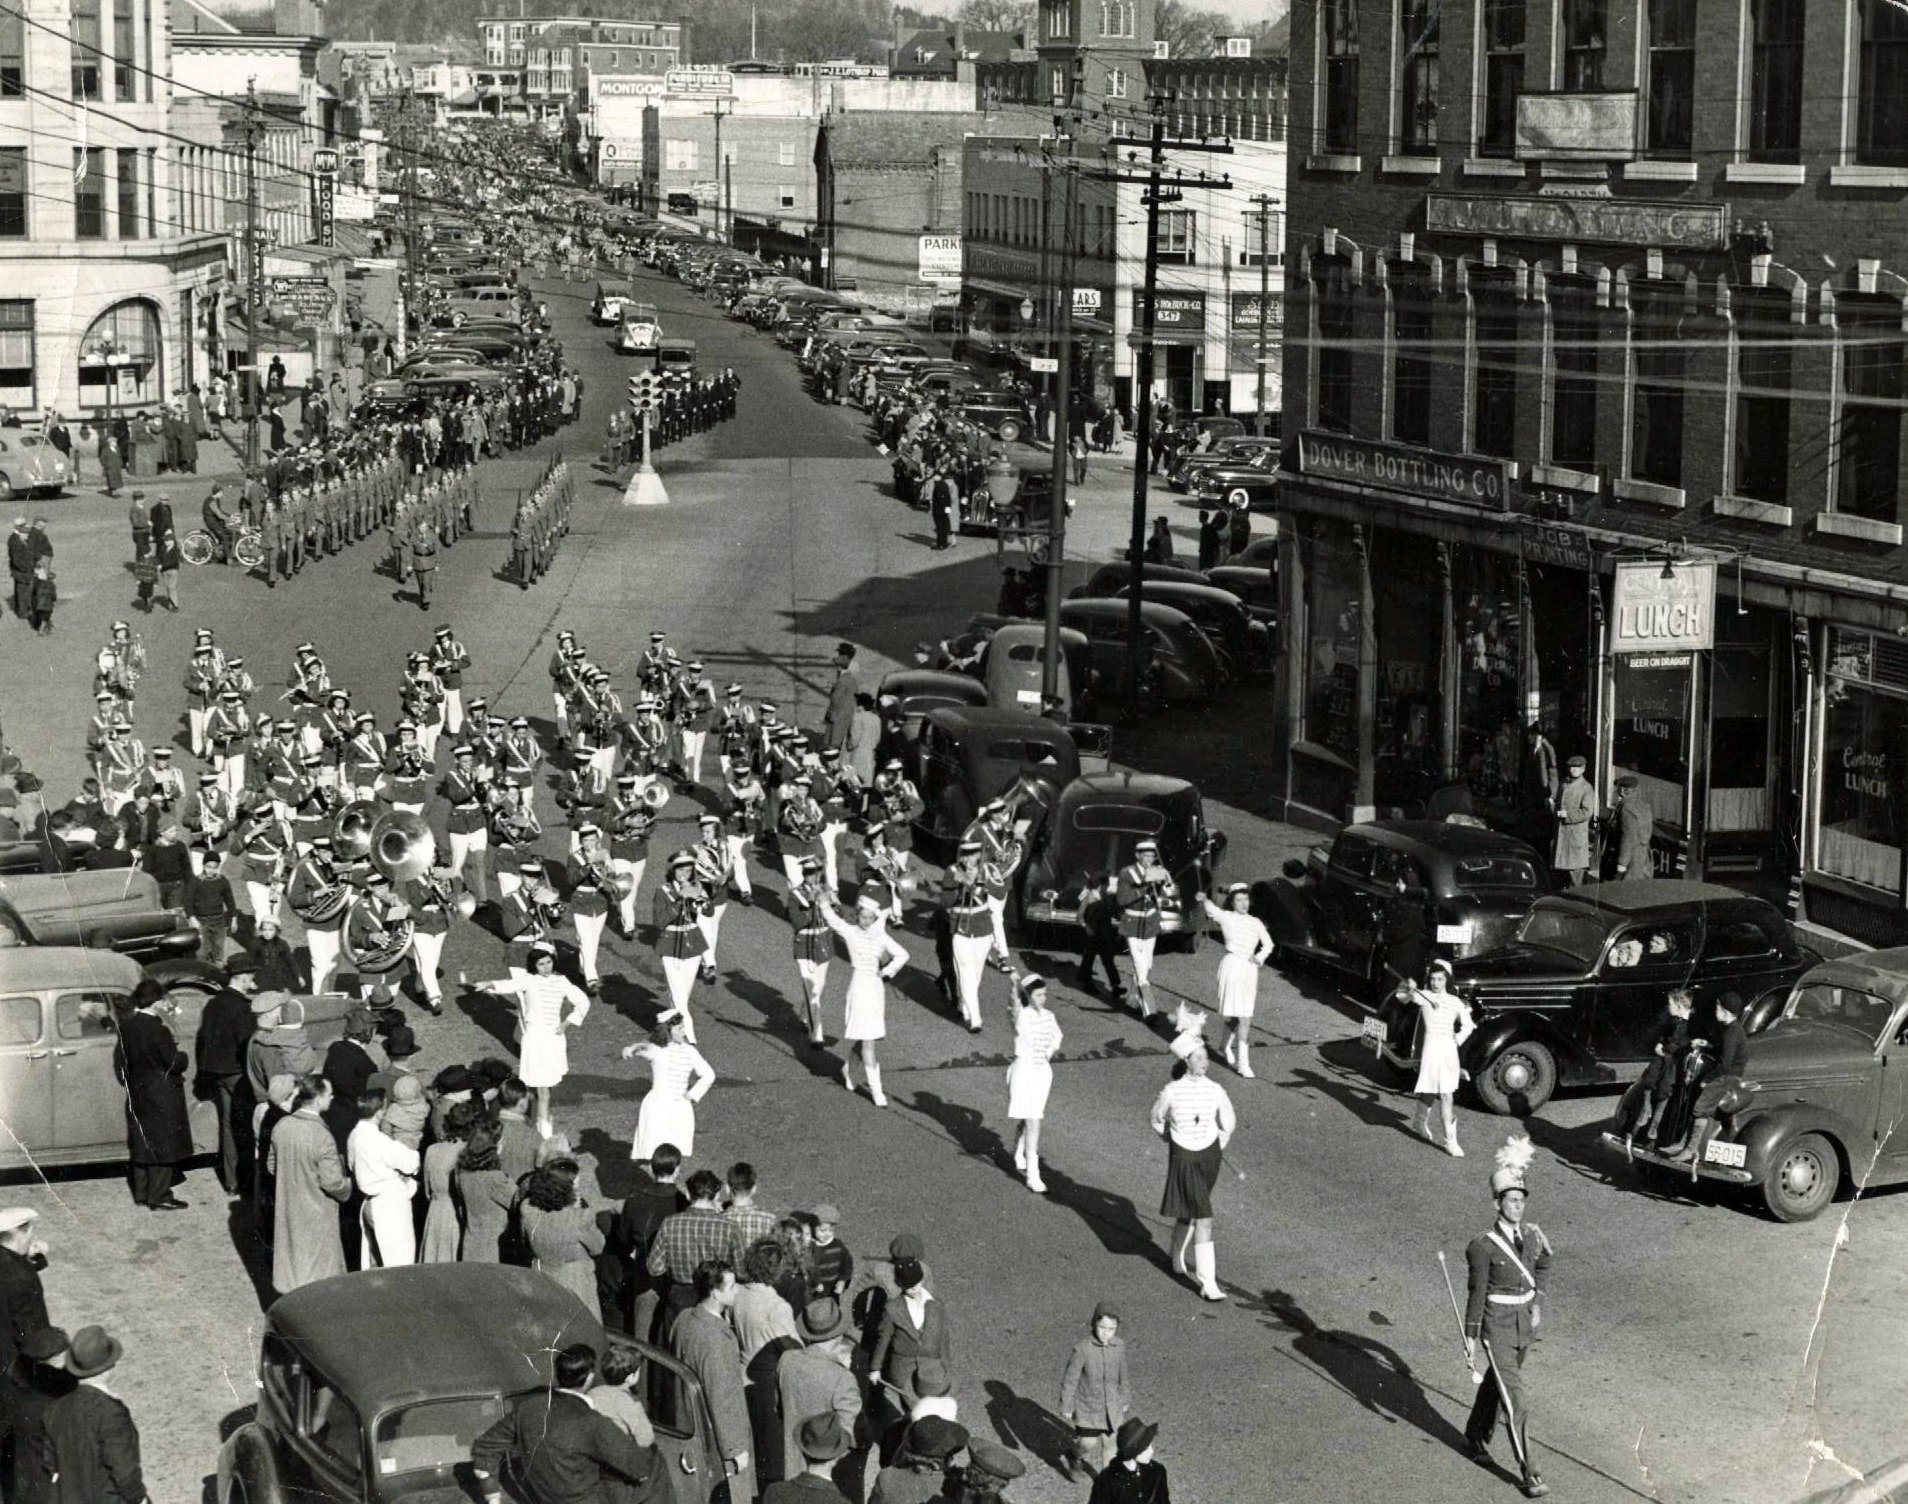 Parade circa 1930s